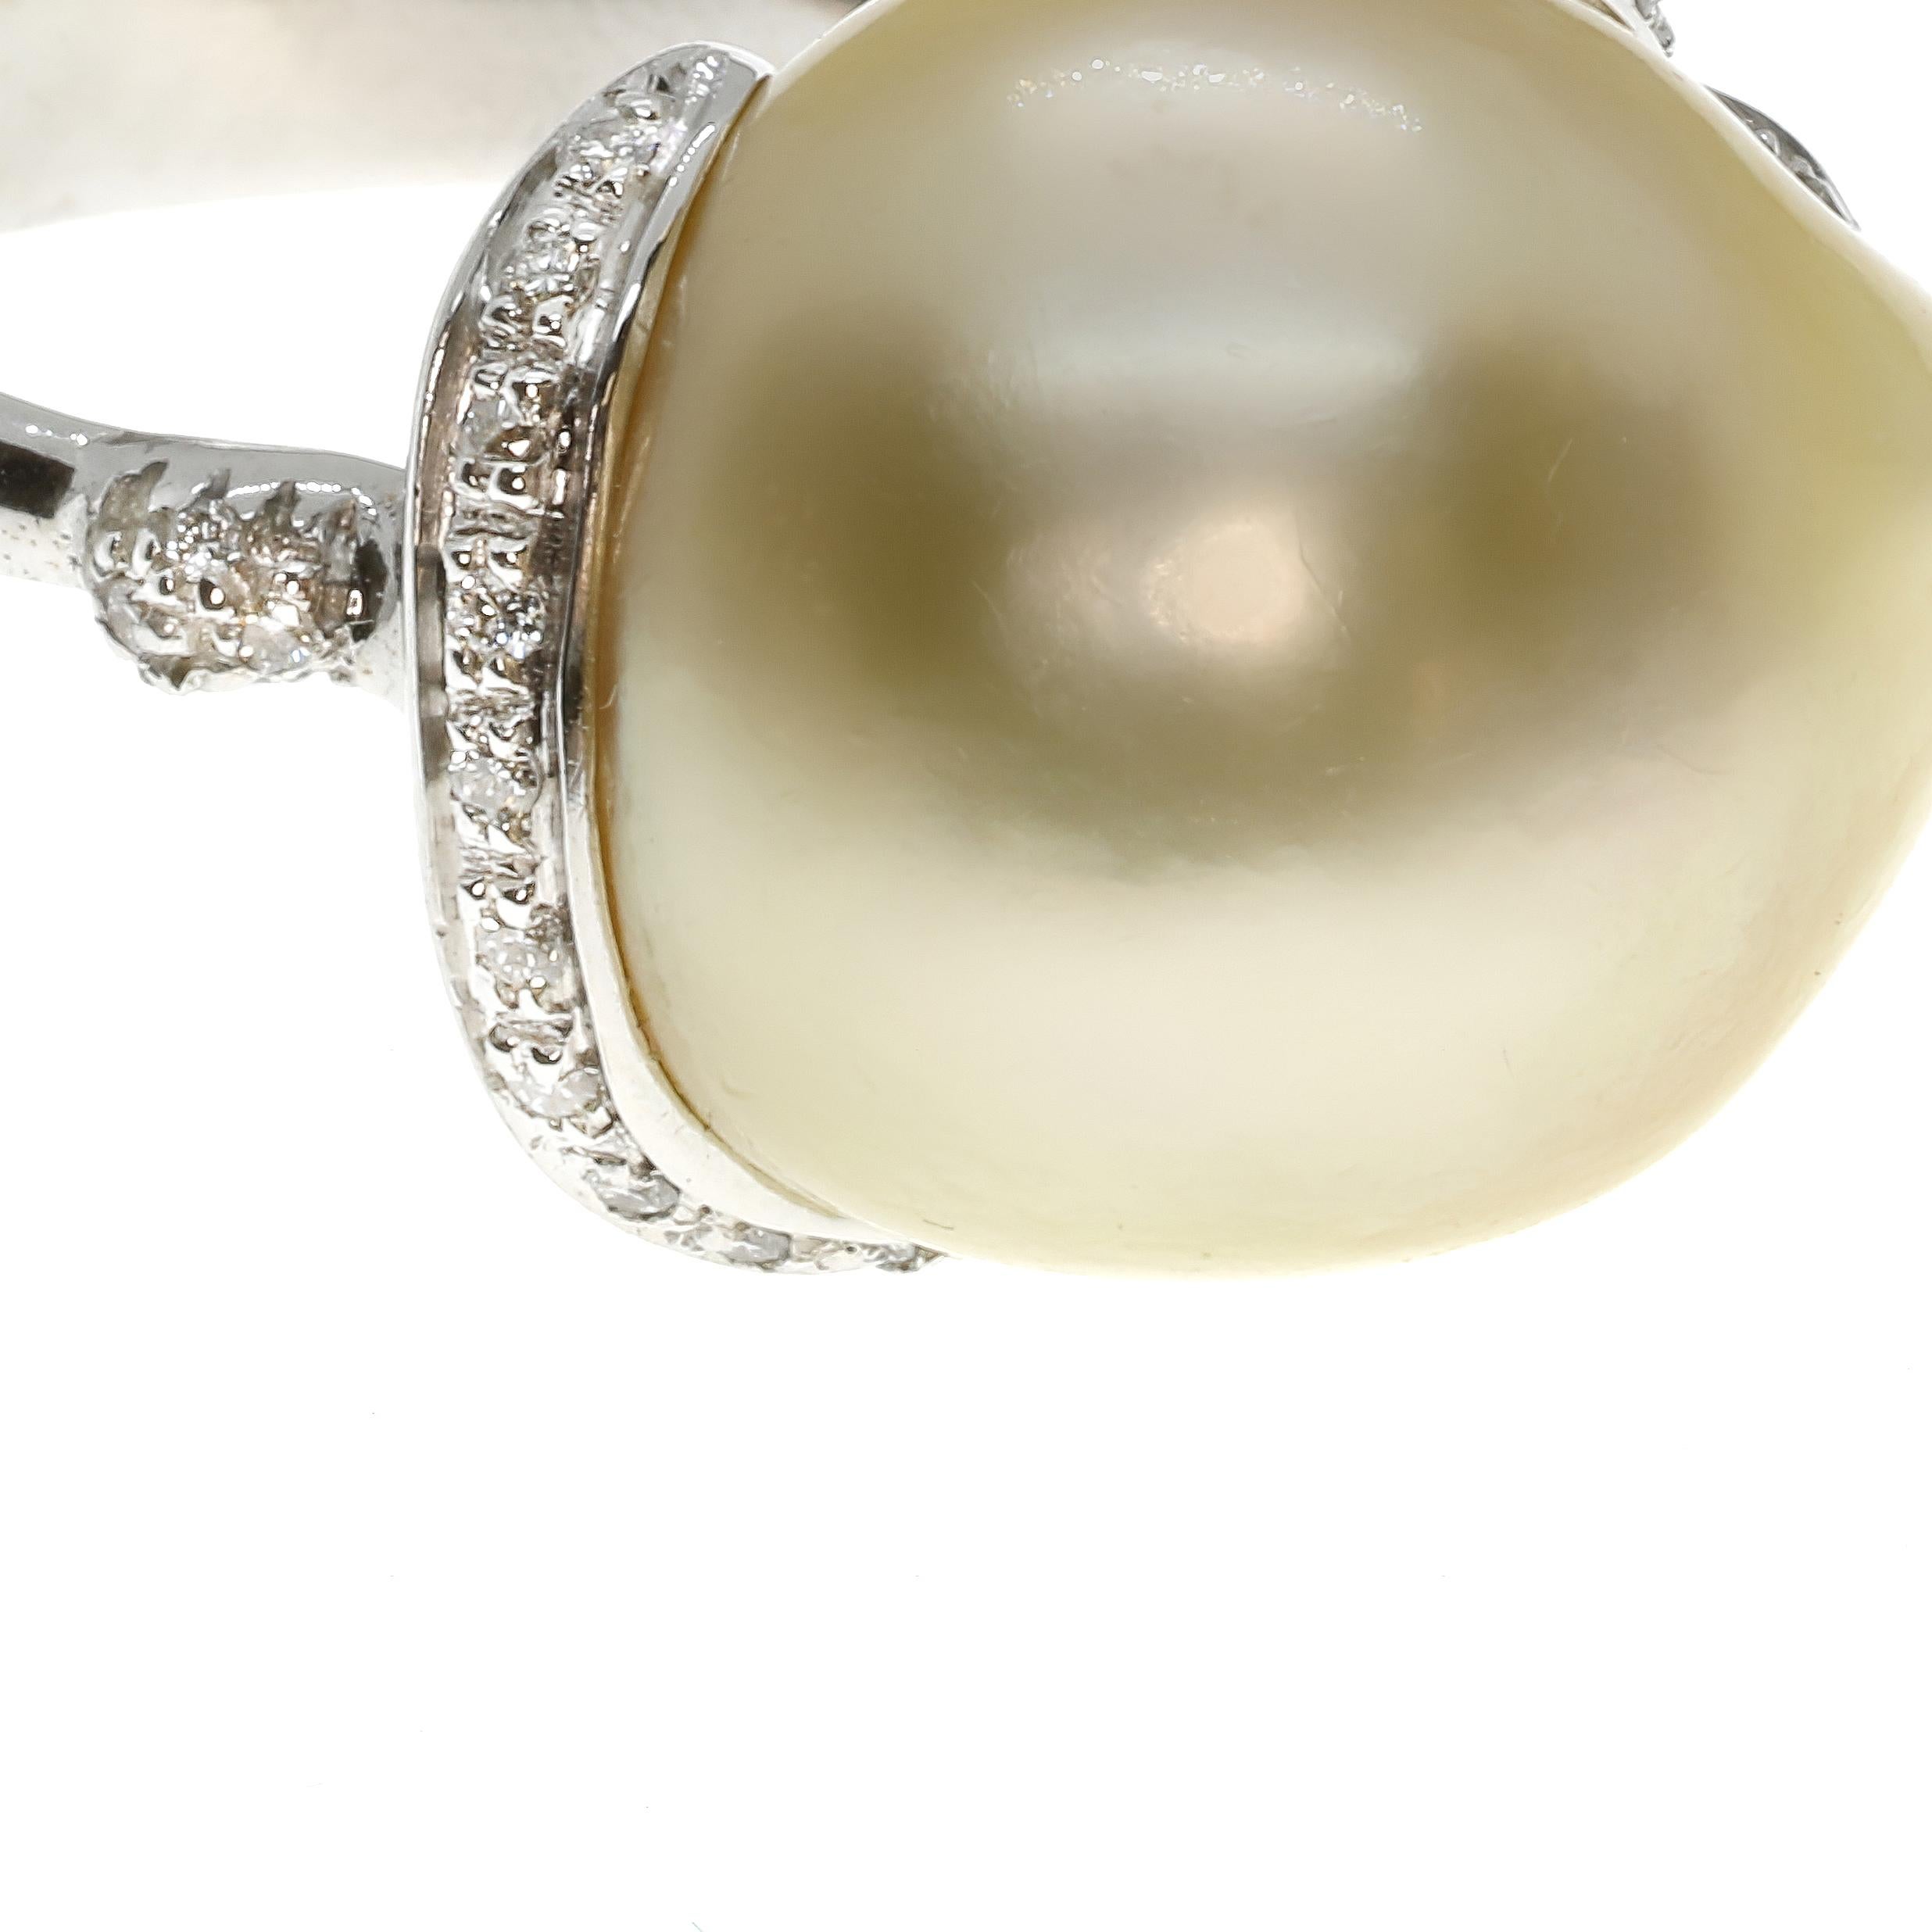 Cette magnifique bague cocktail asymétrique présente une perle australienne lumineuse de 31 carats encadrée de diamants blancs et sertie en or blanc 18 carats. Fabriquée à la main selon des méthodes traditionnelles, cette pièce singulière a été